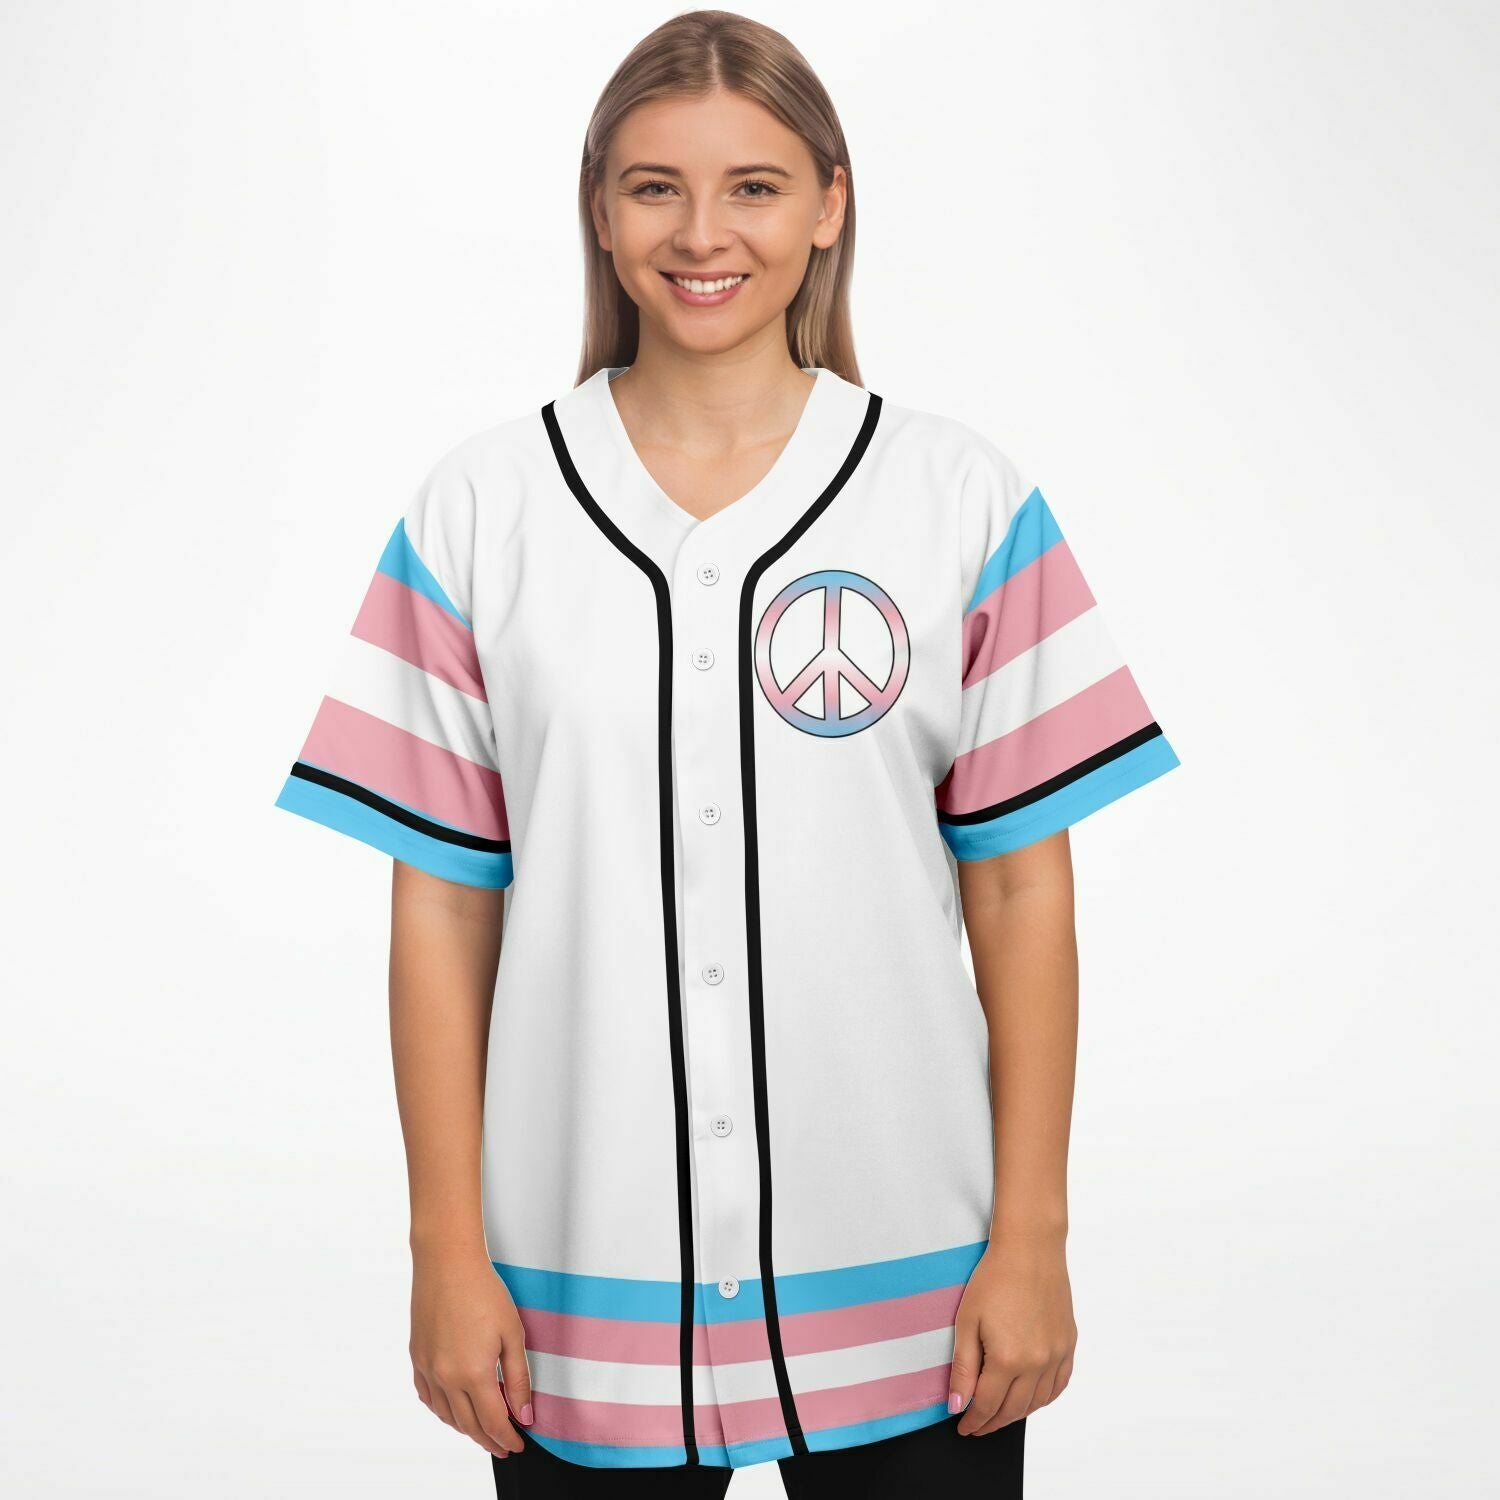 Capital Letter J Monogram Gradient Pink Blue White - Monogram - Baseball T- Shirt